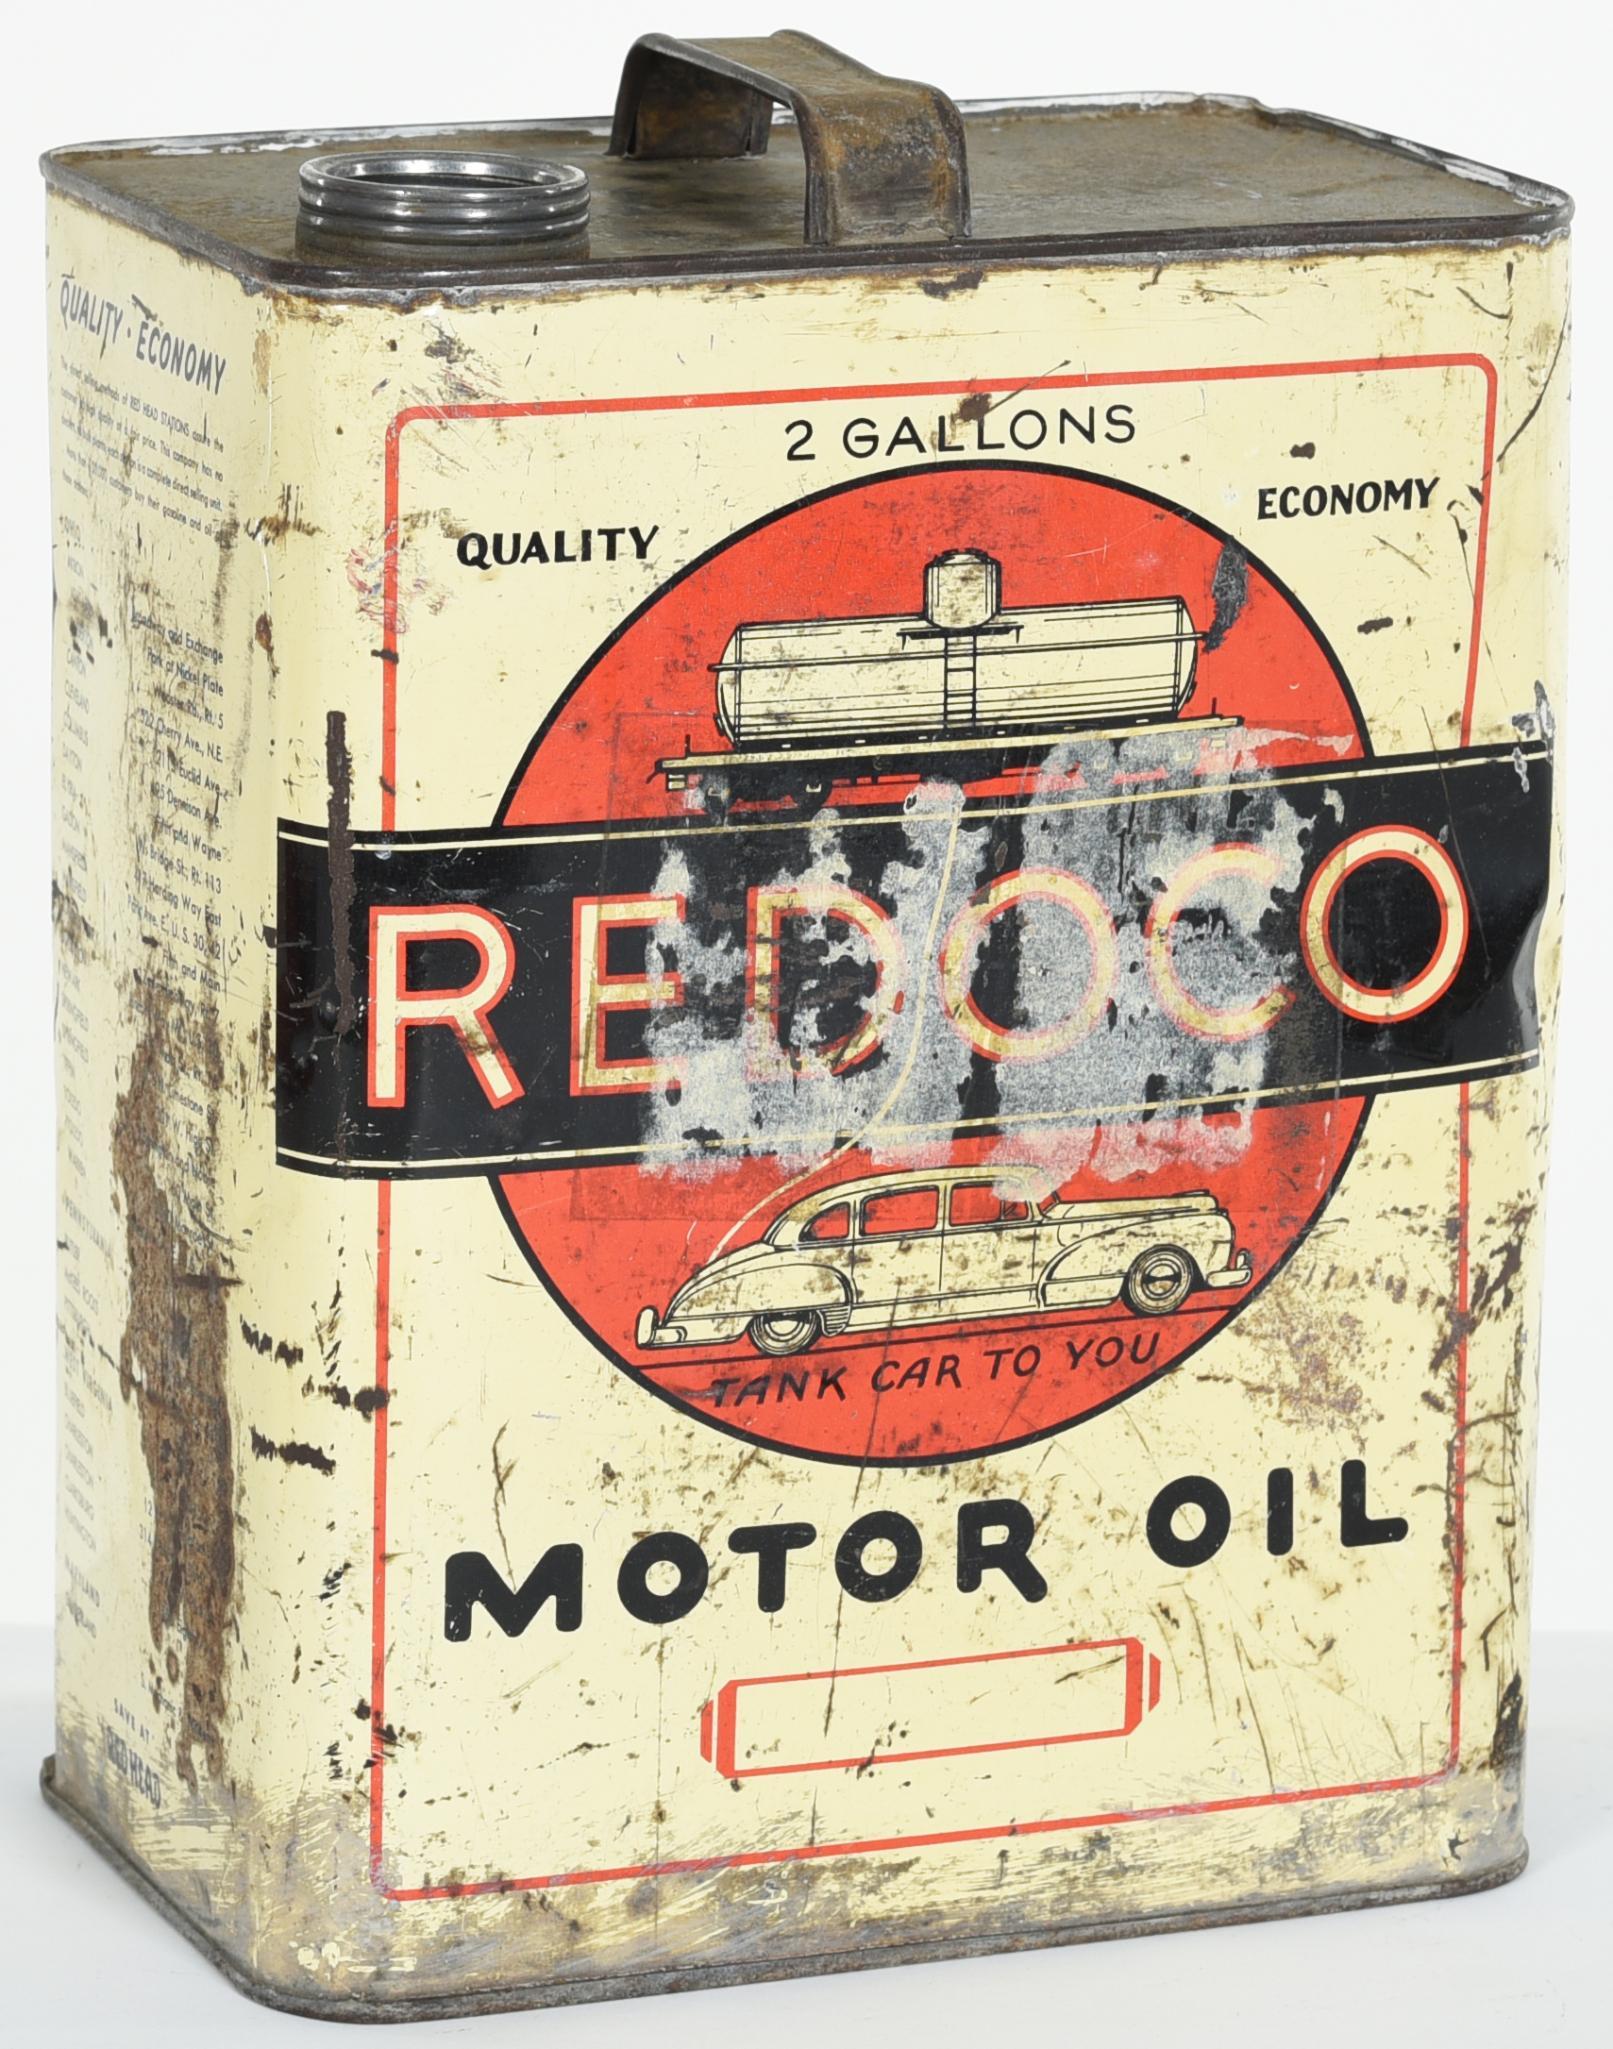 Texaco 1/2 Gallon Motor Oil Can • Antique Advertising